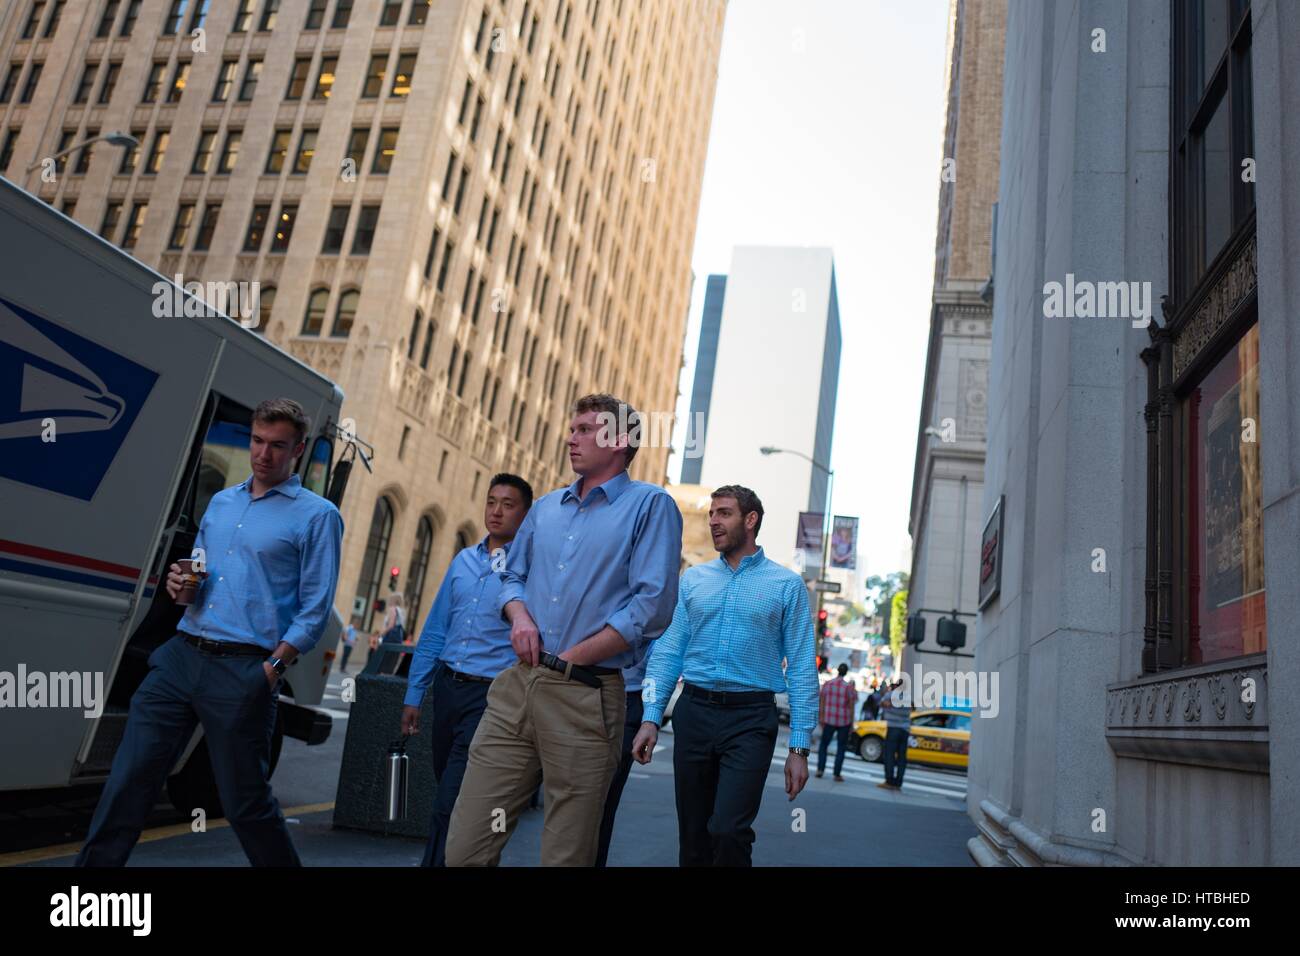 Cuatro jóvenes, posiblemente, banqueros, vistiendo camisetas idénticas abajo del botón azul camina más allá de un edificio en el distrito financiero, barrio de San Francisco, California, con un hombre sujetando una taza de café, 26 de septiembre de 2016. Foto de stock